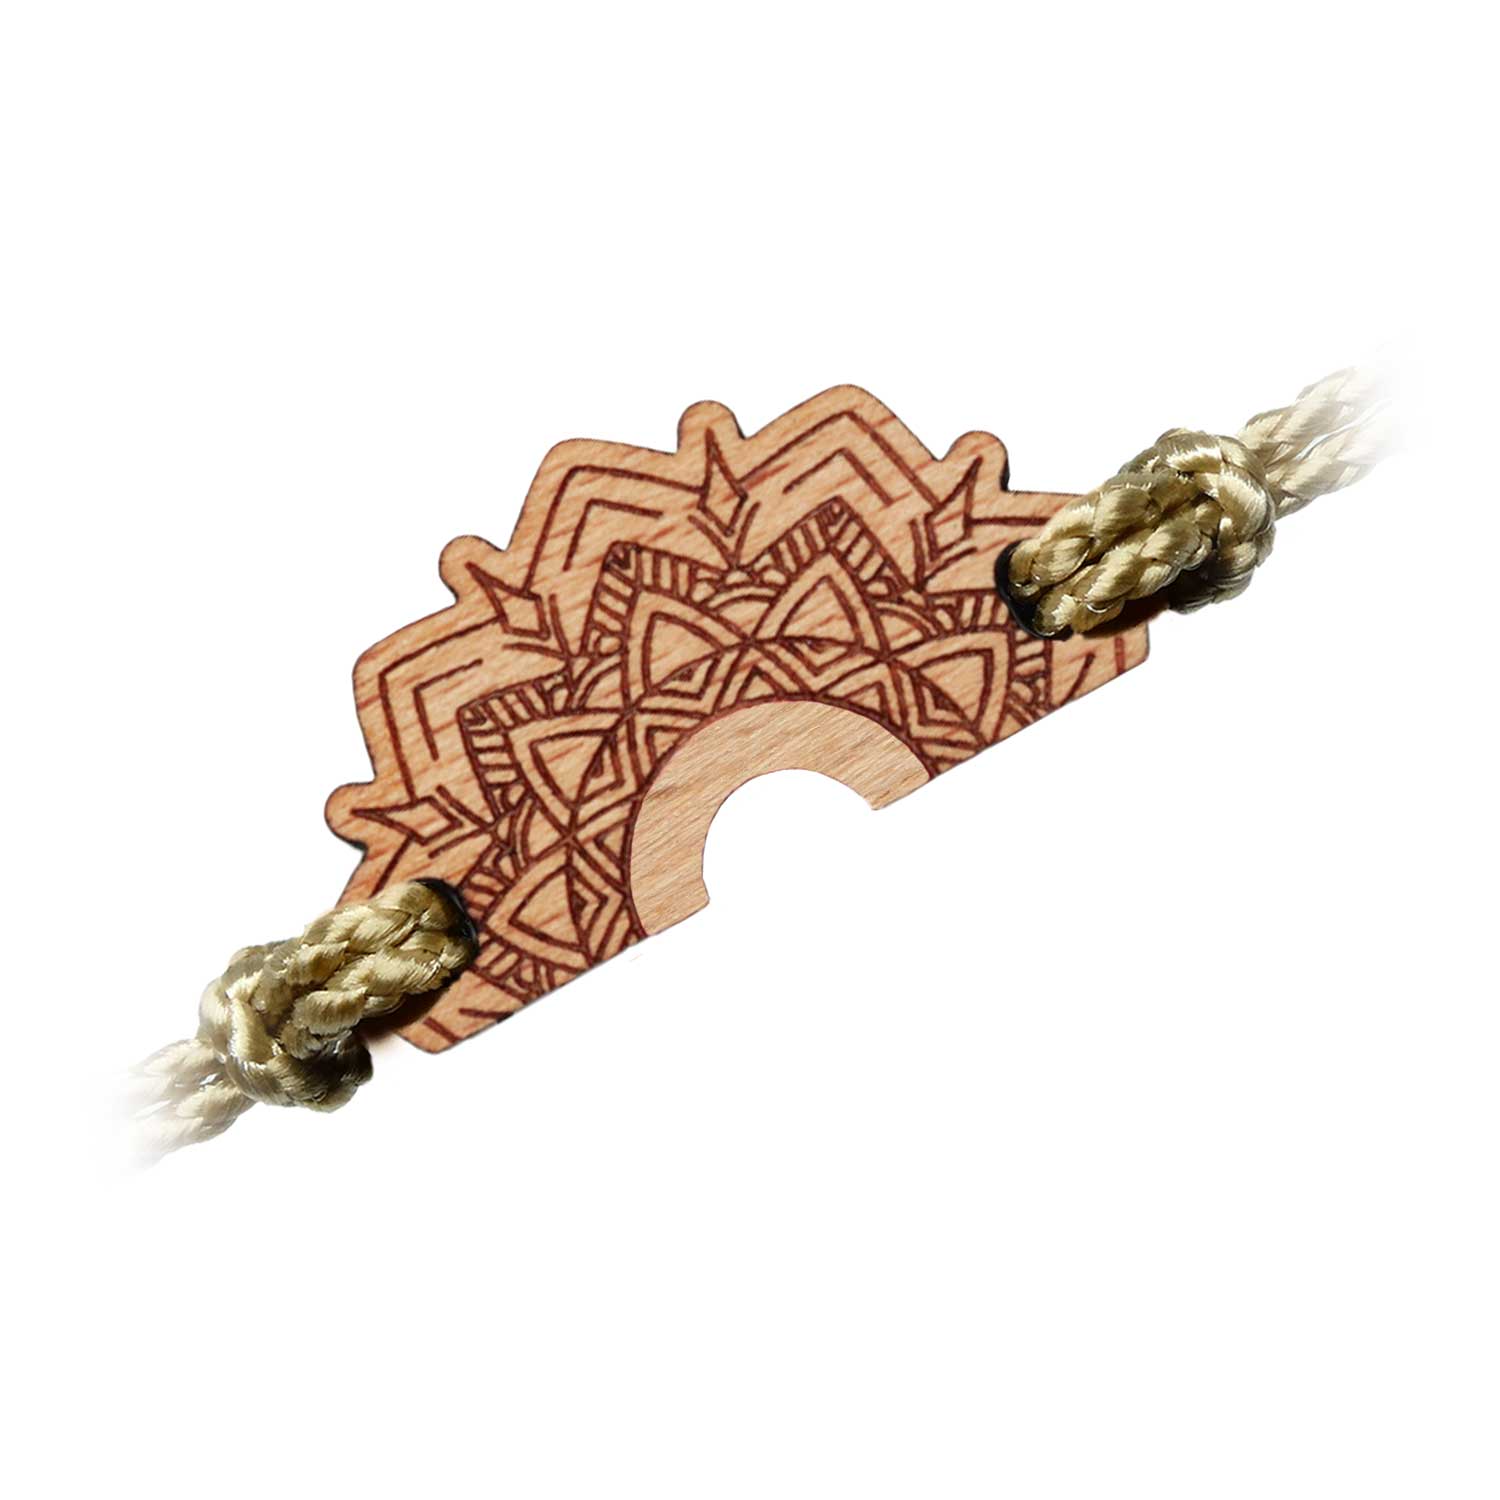 Wooden bracelet inspired by mandalas